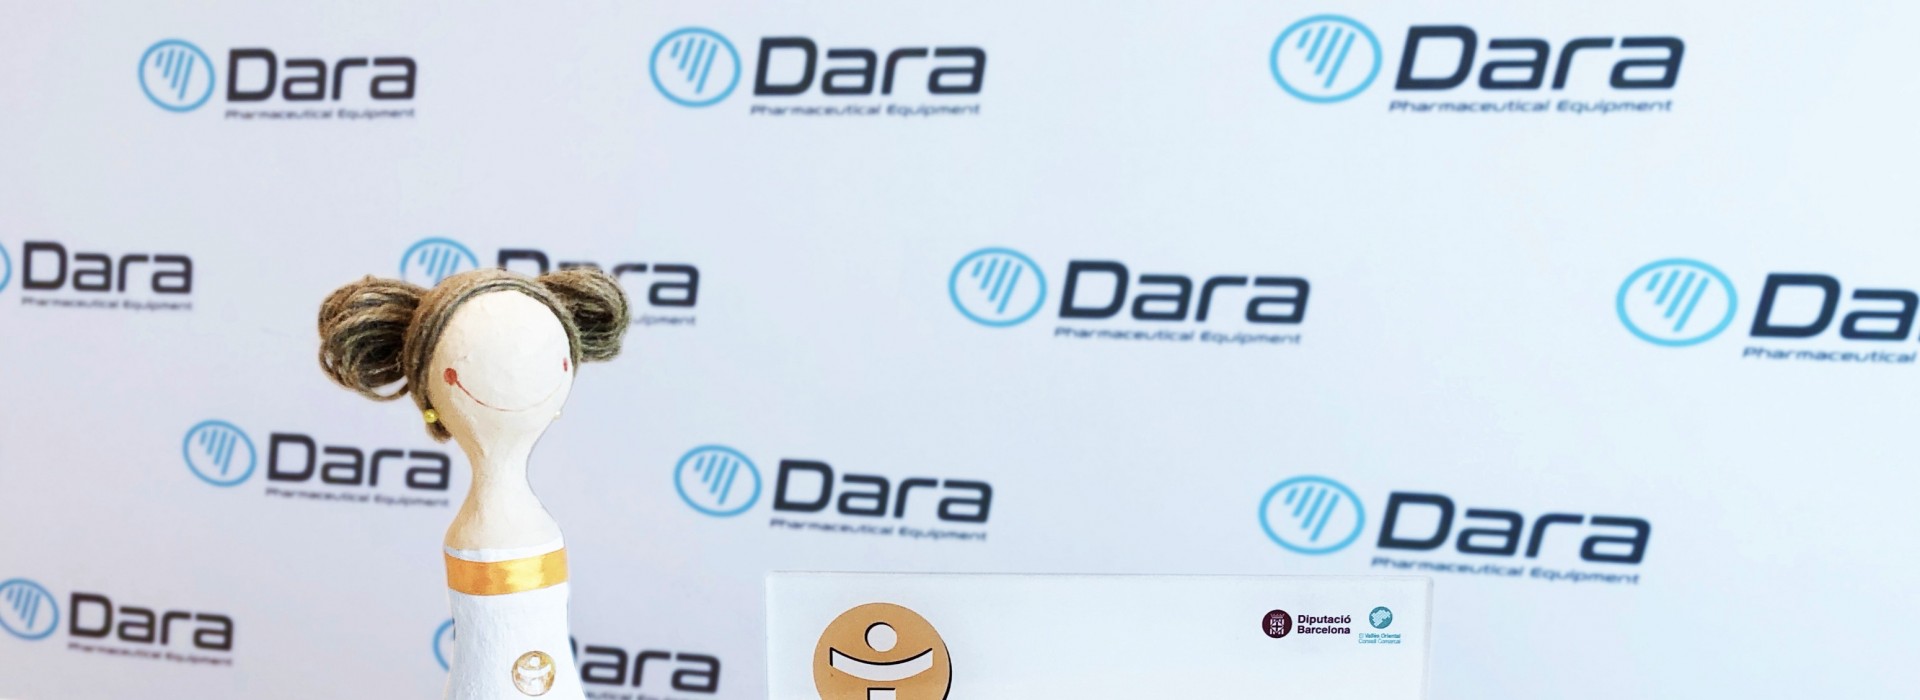 DARA Pharma, was awarded "La dona d’aigua"